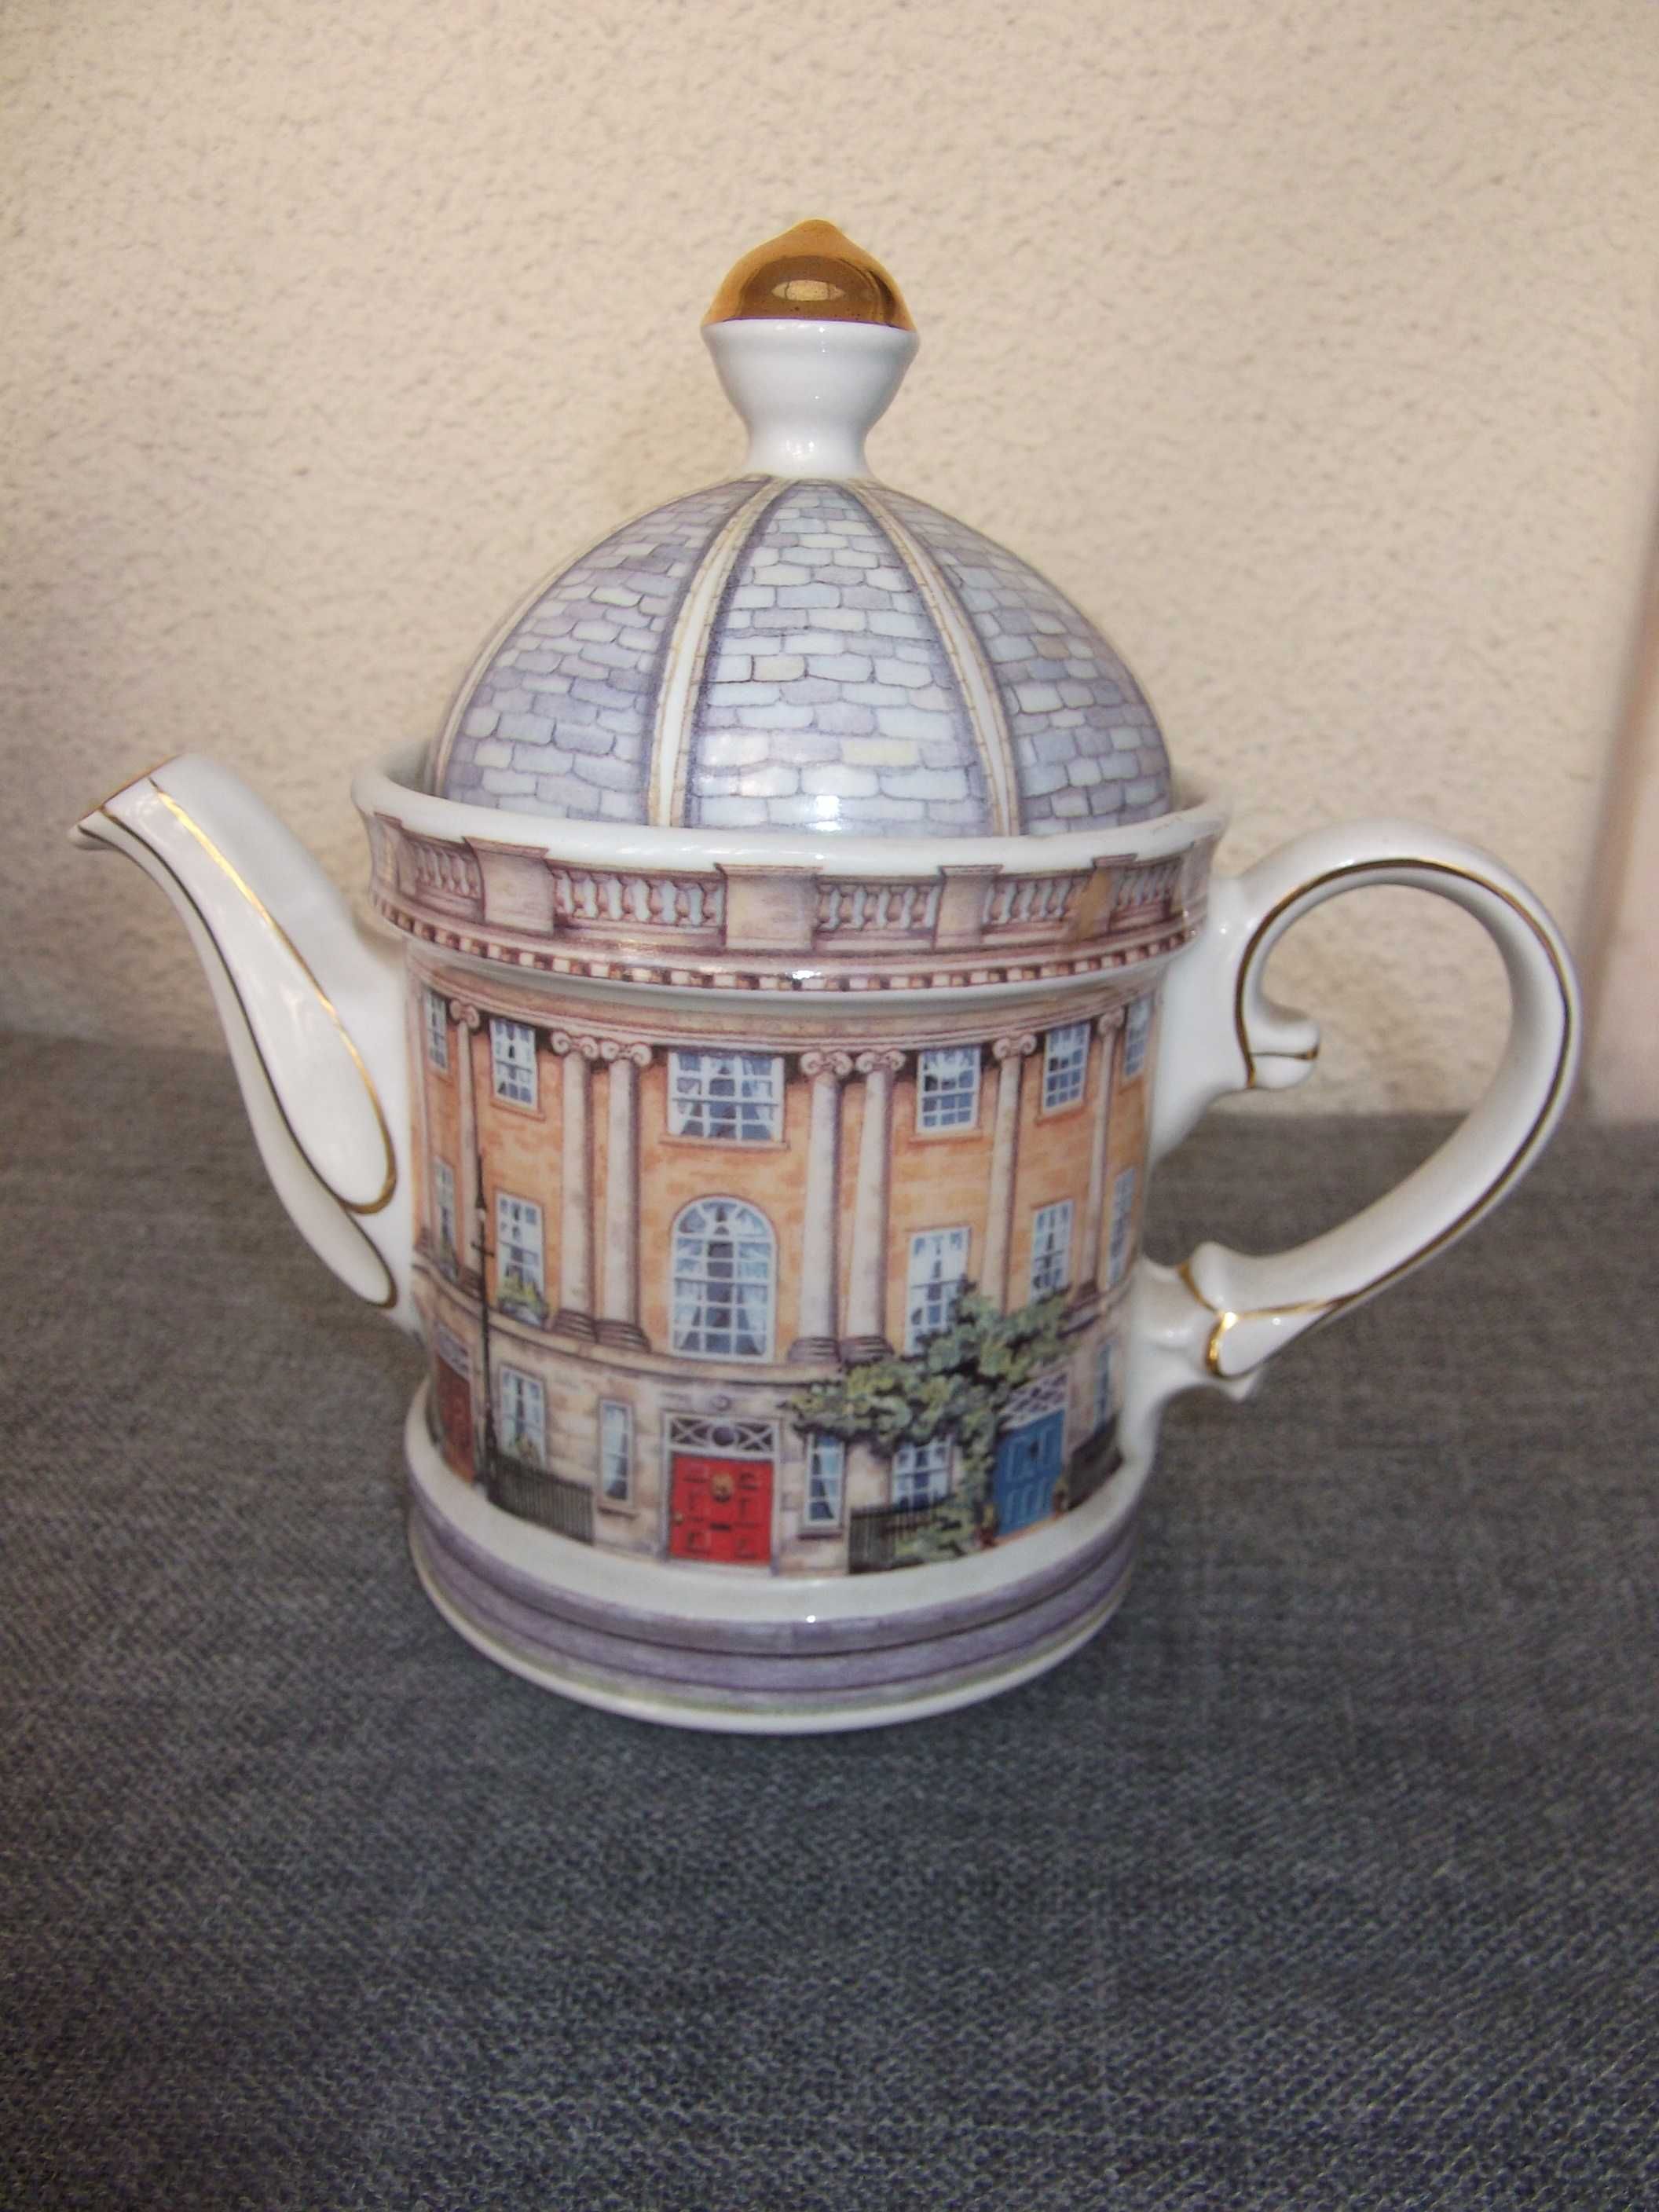 Bules cafeteiras porcelana e vidro / Porcelain glass tea & coffee pots